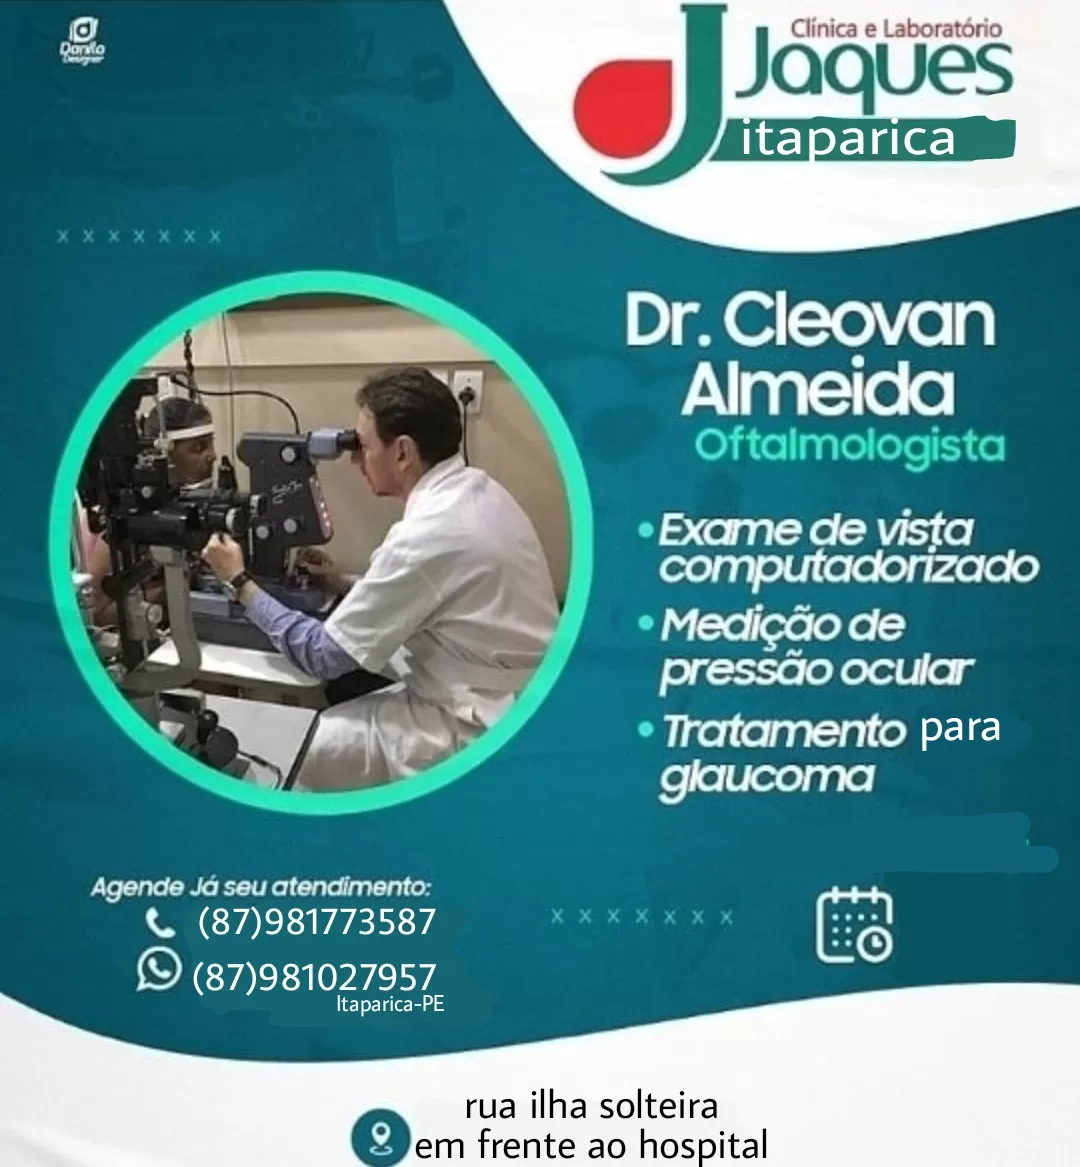 Jatobá: Dr. Cleovan Almeida, Oftalmologista atenderá neste sábado (16/01) na Clínica e Laboratório Jaques em Itaparica